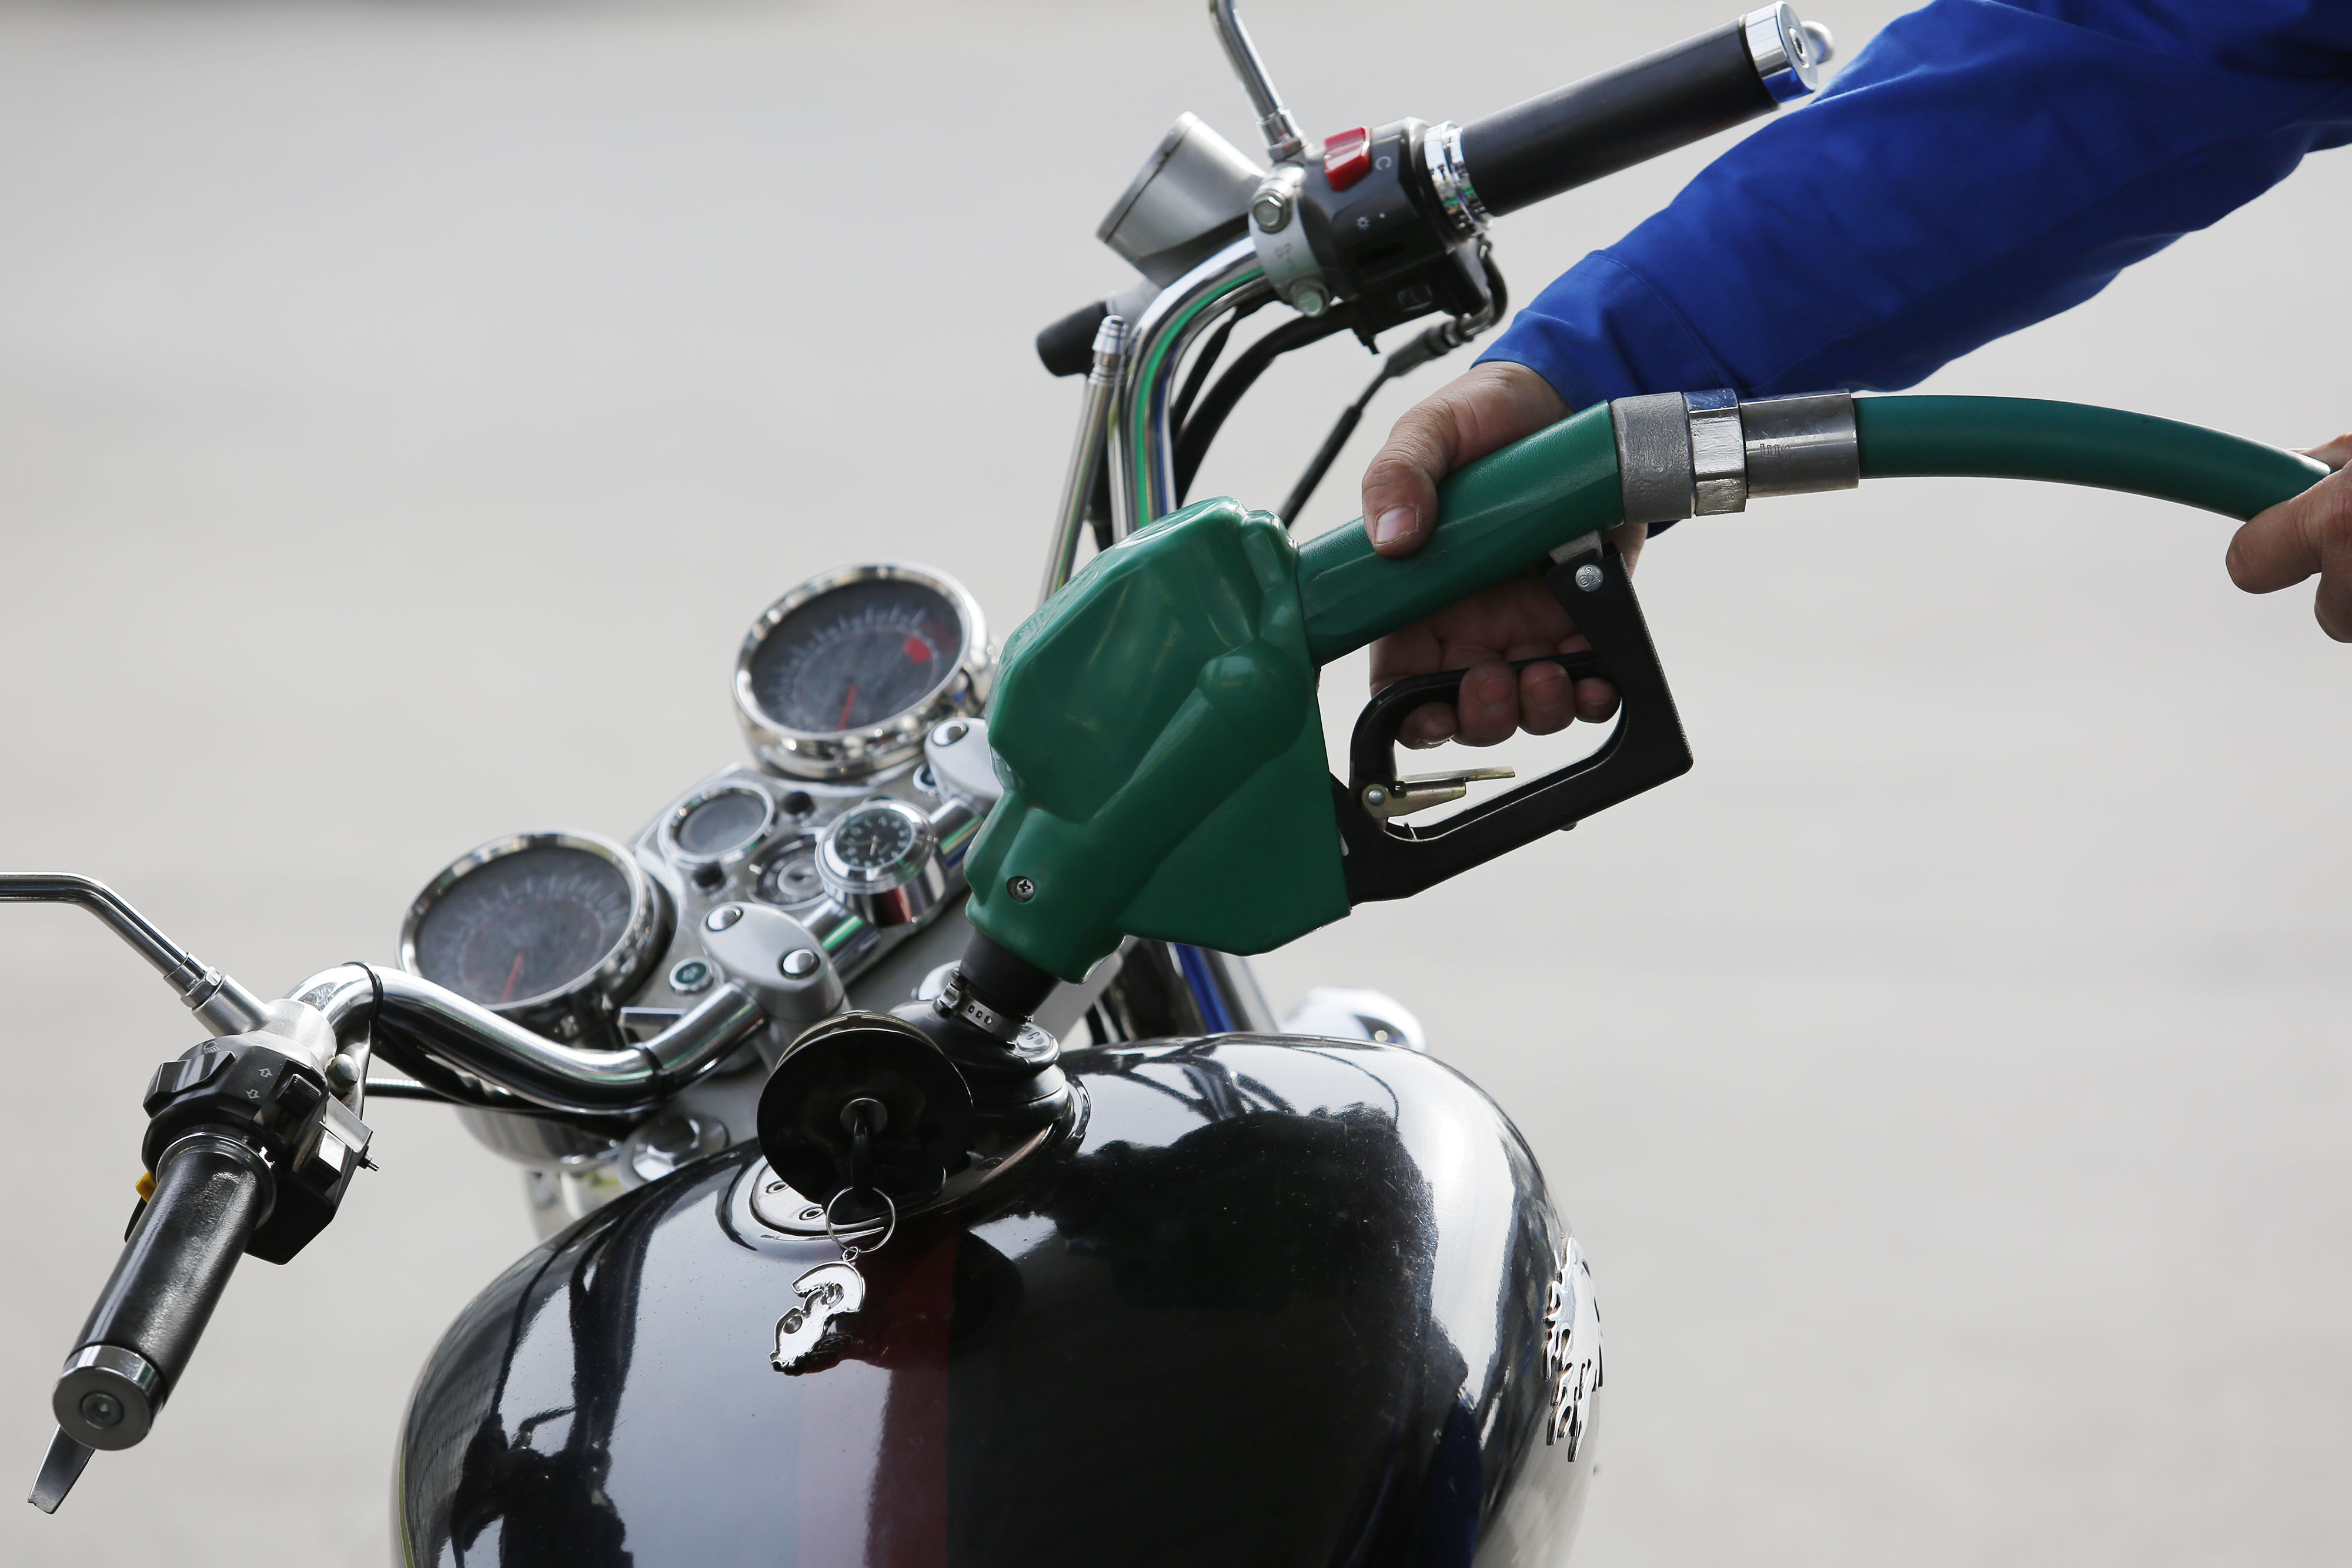 Ahorro de bencina en motos.